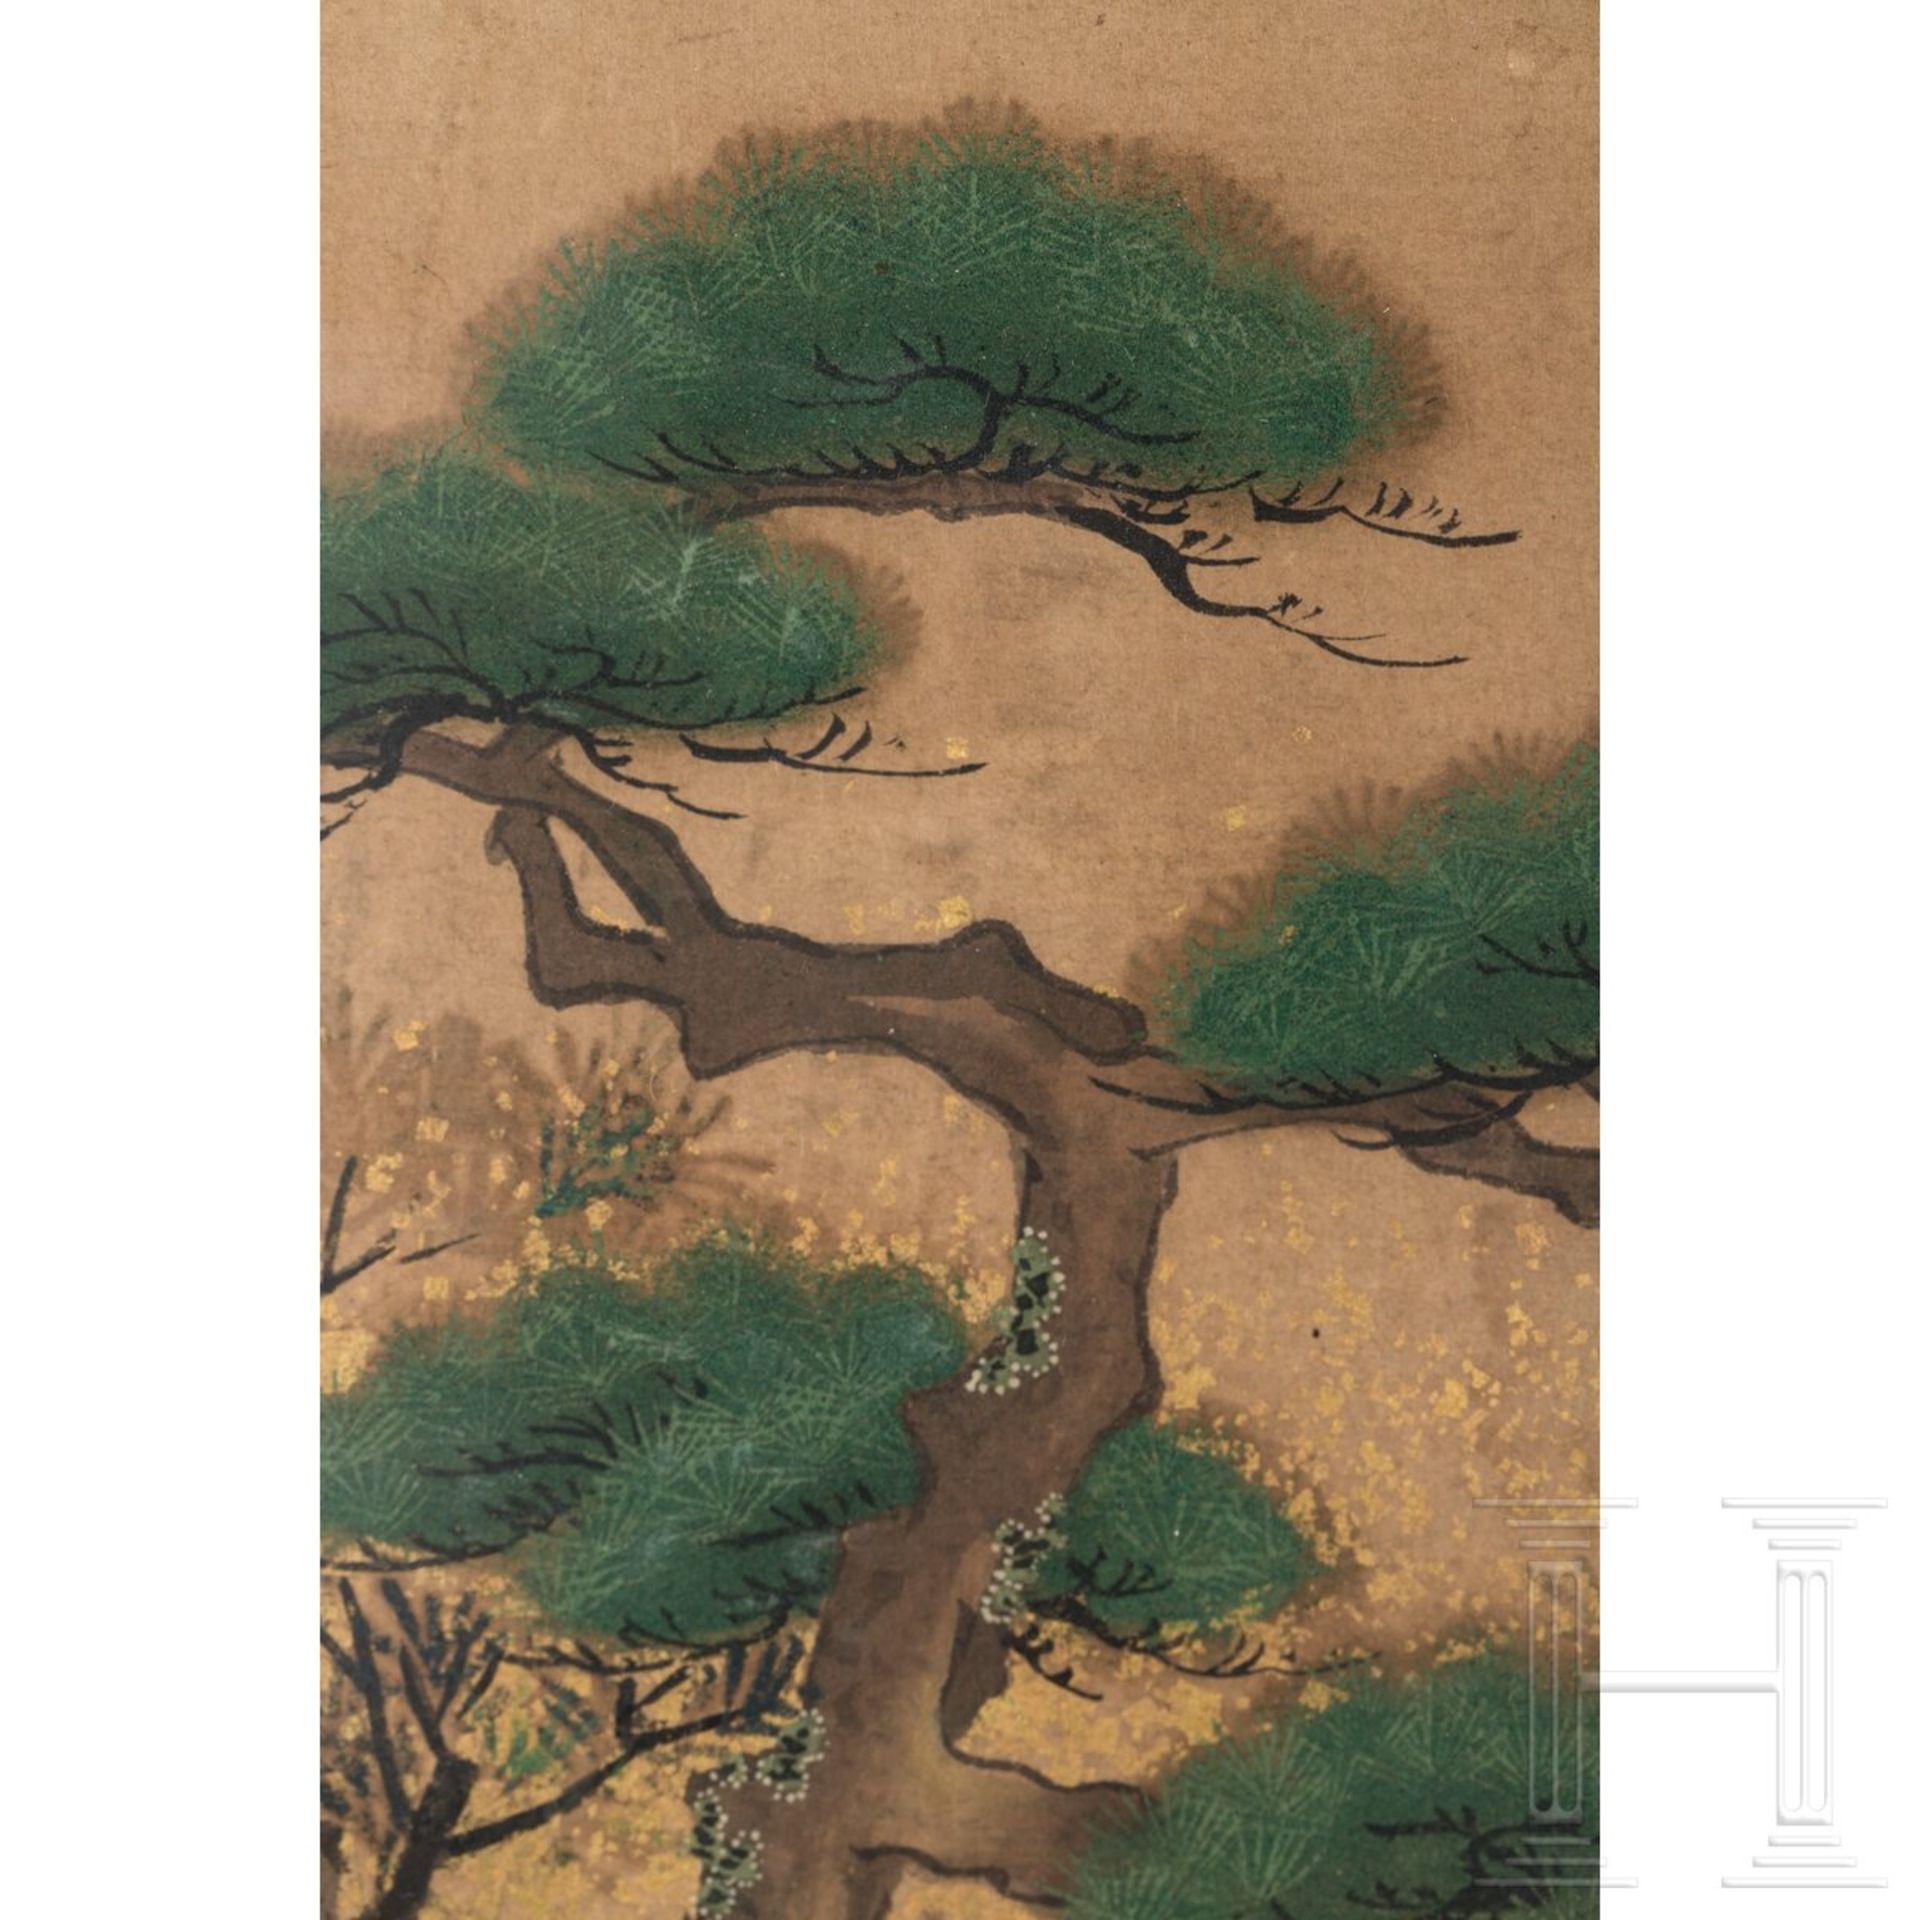 Entköpfung eines Samurai, Rimpa-Blattgoldmalerei, Japan, Edo-/Meiji-Periode - Bild 3 aus 5